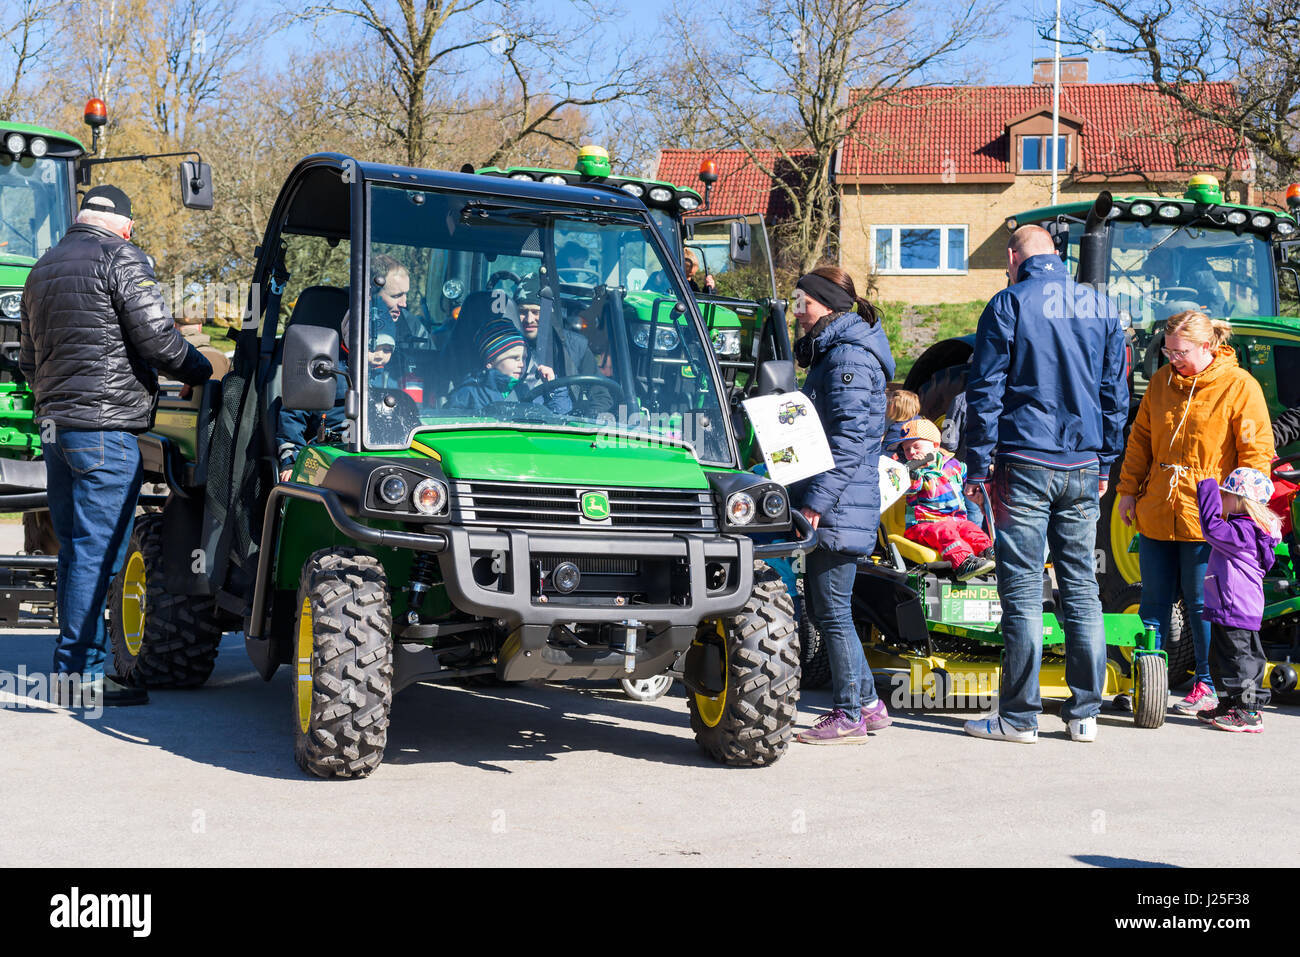 Brakne Hoby, Suecia - 22 de abril de 2017: Documental de los pequeños agricultores de público del día. Las familias que asisten a la exposición de tractores John Deere. Niños jugando Foto de stock